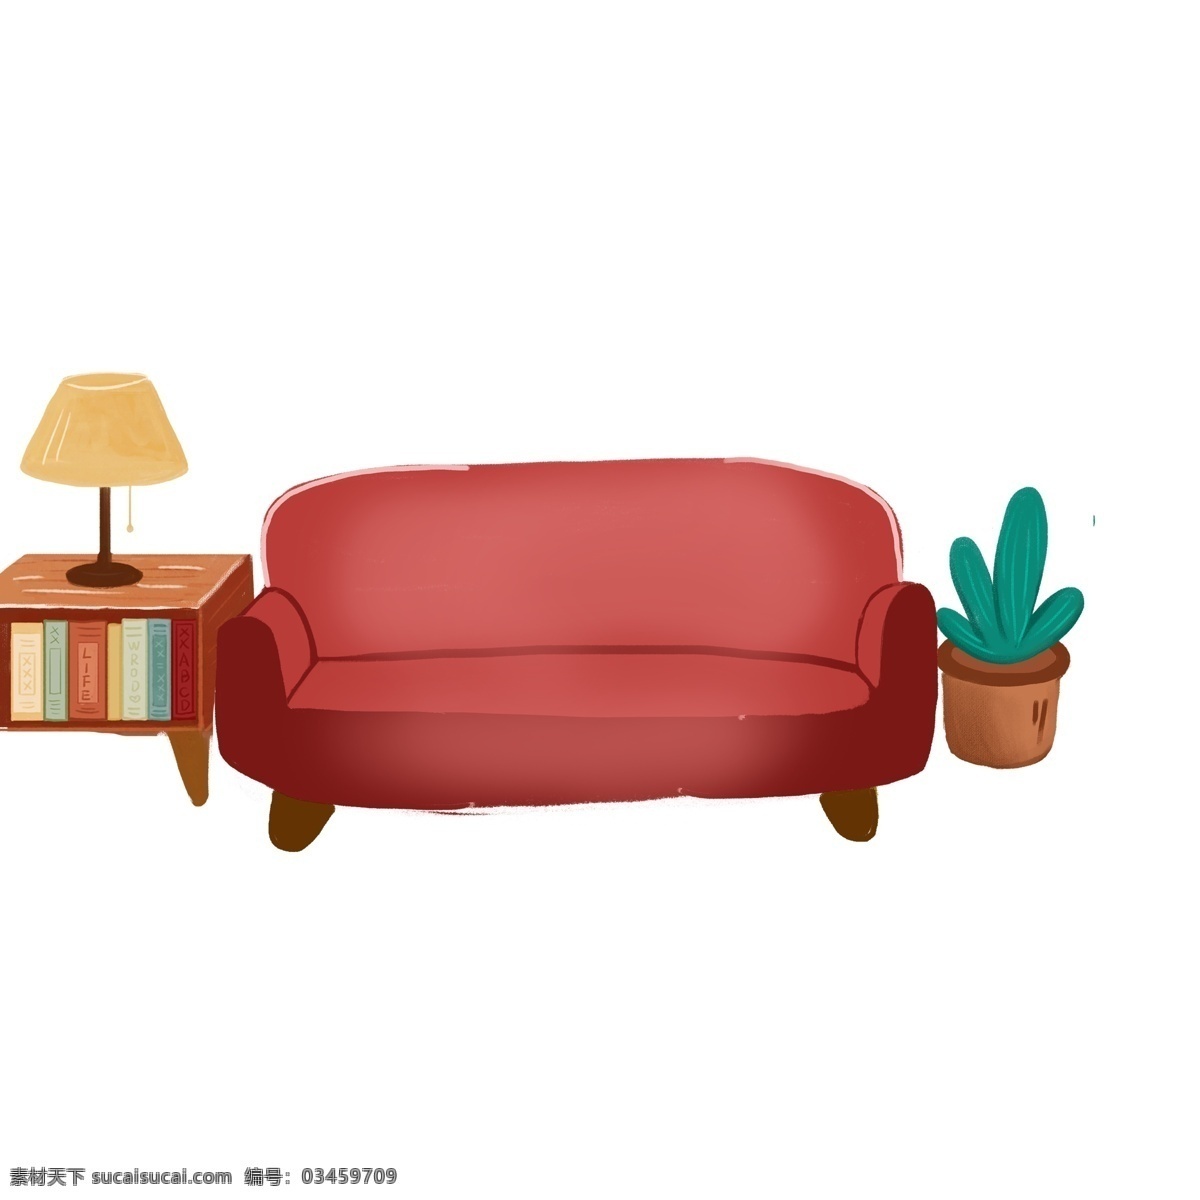 红色 沙发 台灯 盆栽 元素 家具 红色沙发 绿叶 植物 设计元素 元素设计 简约 创意元素 psd元素 床头柜